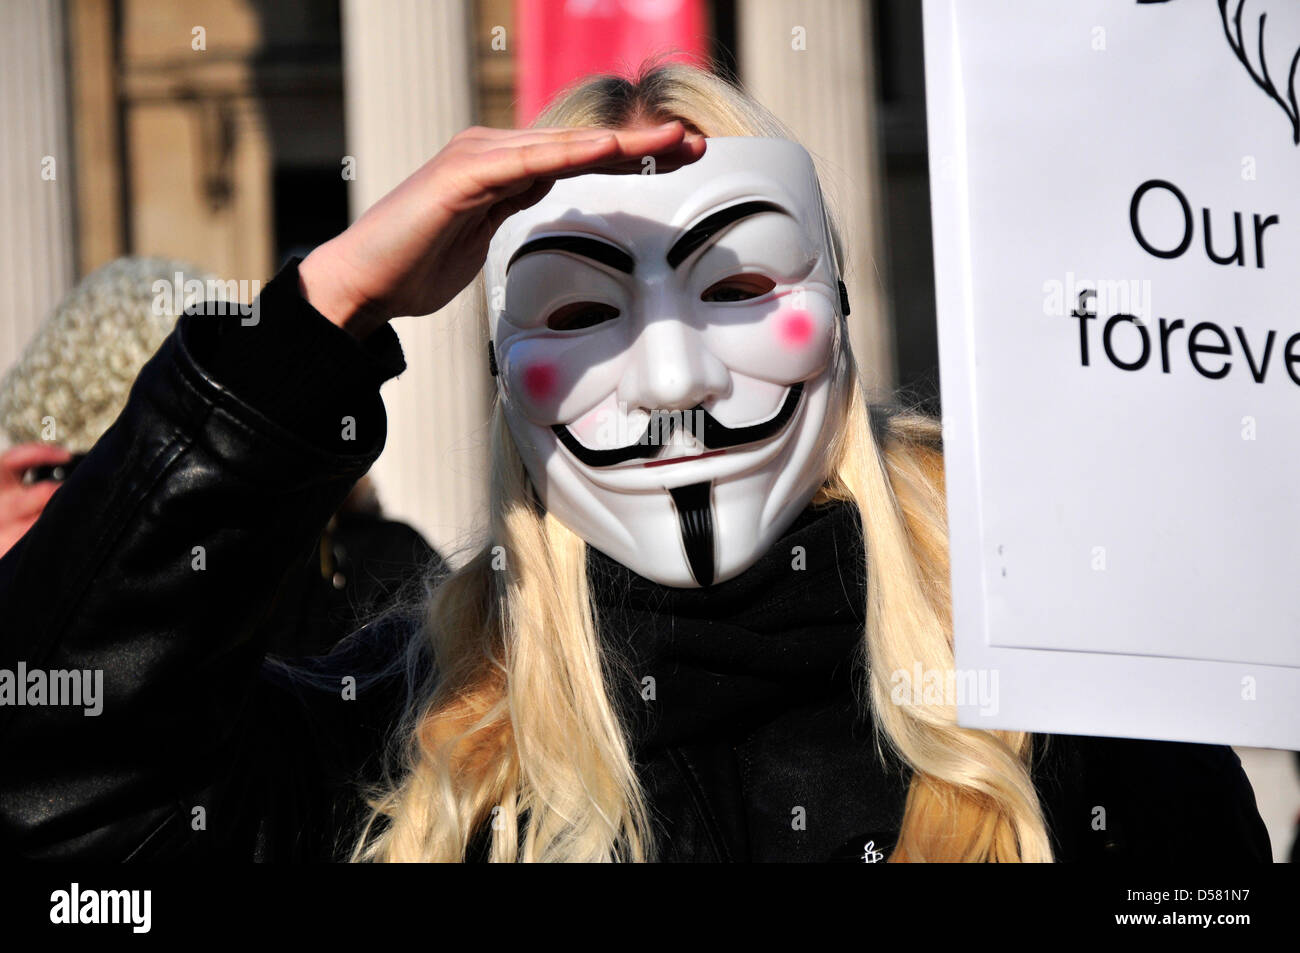 Un manifestant portant un masque anonyme lors d'un rassemblement à Trafalgar Square, Londres Banque D'Images